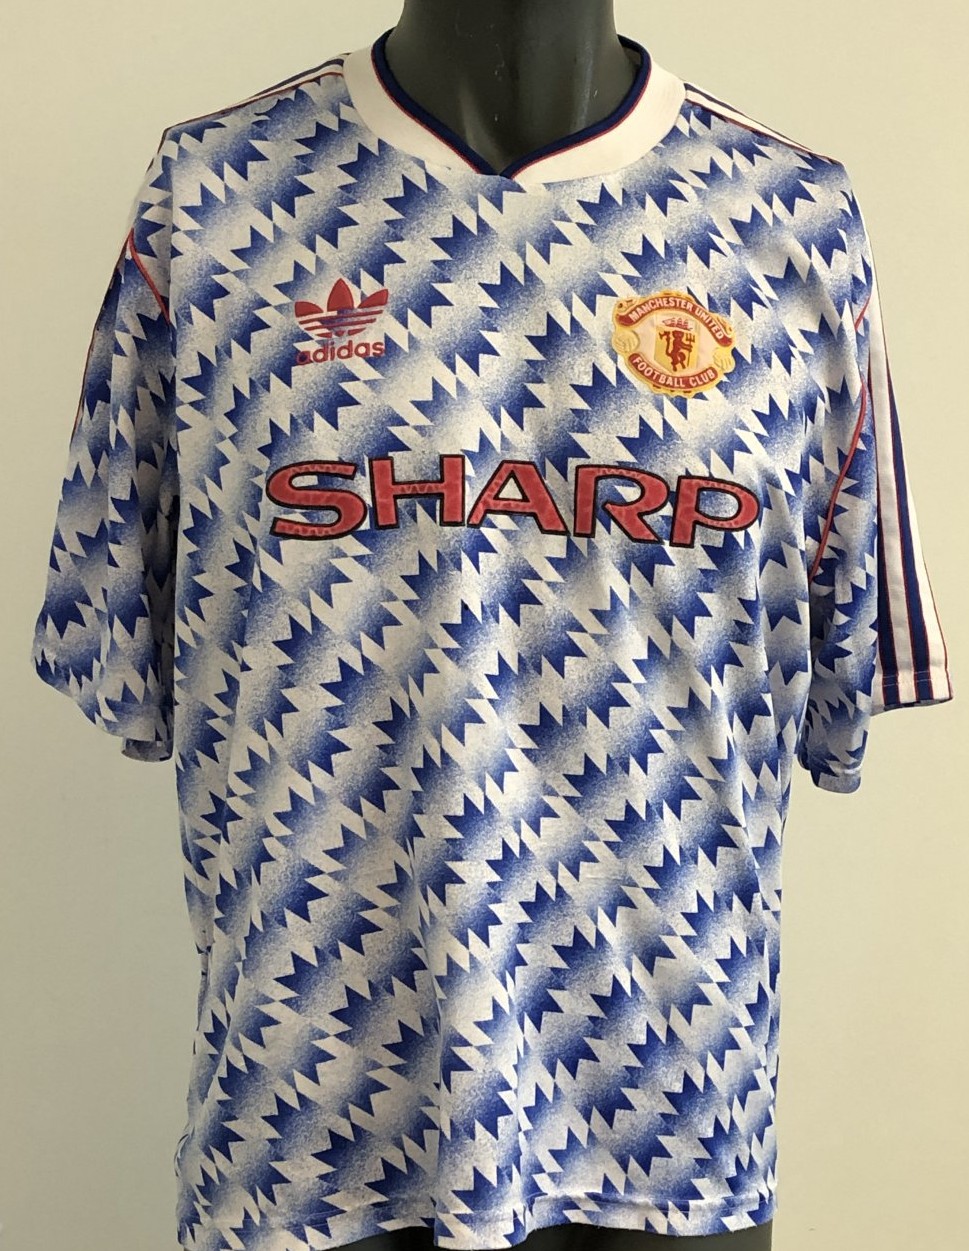 Maillot extérieur de Manchester united 1991-1992 RÉTRO vintage jersey 